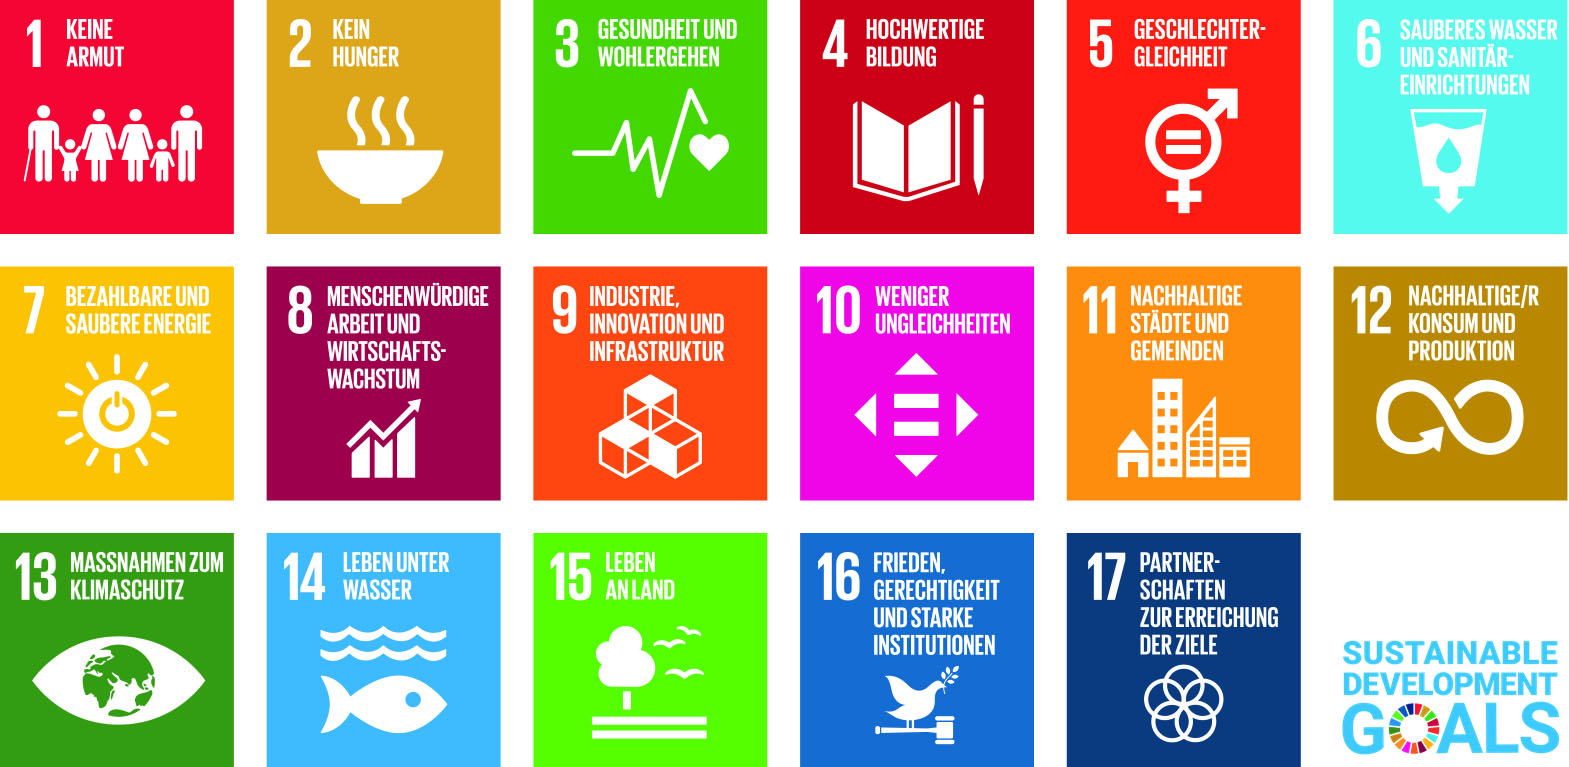 Sustainable Development Goals (SDGs) der Vereinten Nationen